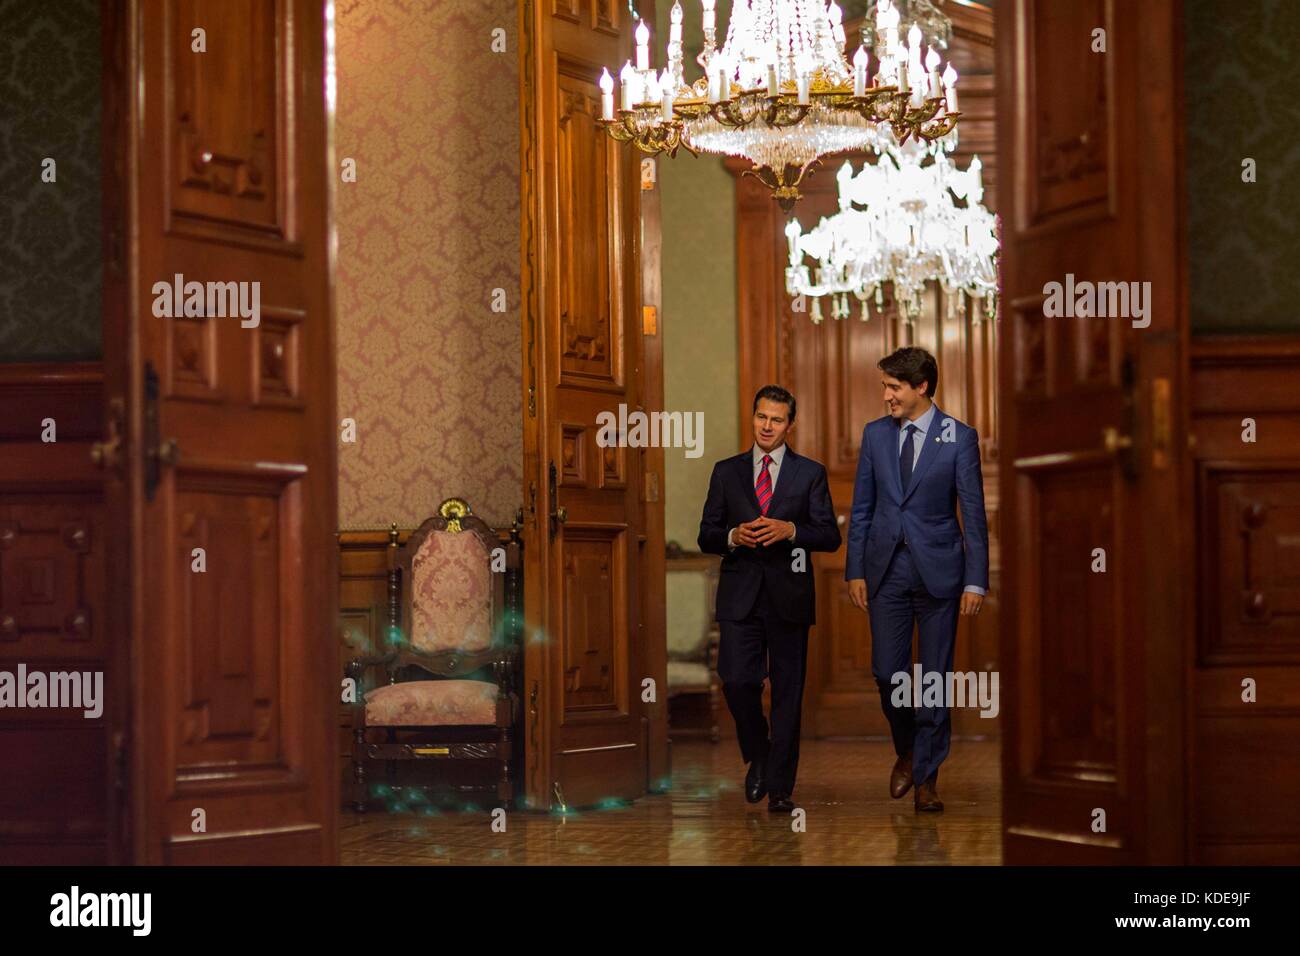 Il primo ministro canadese justin trudeau e il presidente messicano enrique peña nieto camminare insieme a seguito di una riunione bilaterale al Palacio Nacional ottobre 12, 2017 a Città del Messico. (Presidenciamx via planetpix) Foto Stock